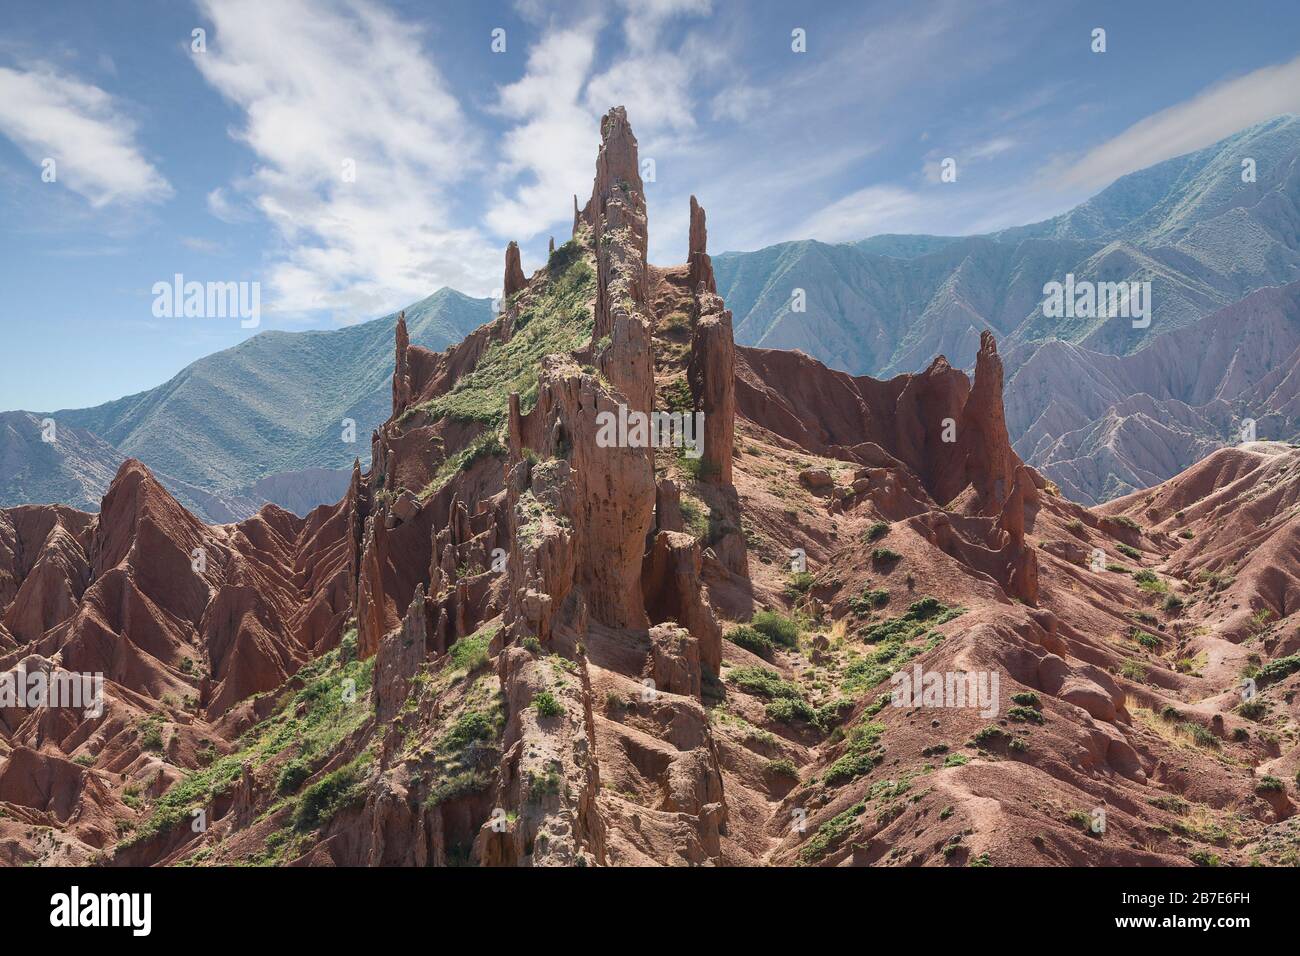 Felsformationen bekannt als Märchenschloss, in der Nähe der Stadt Kaji Say, Kirgisistan Stockfoto